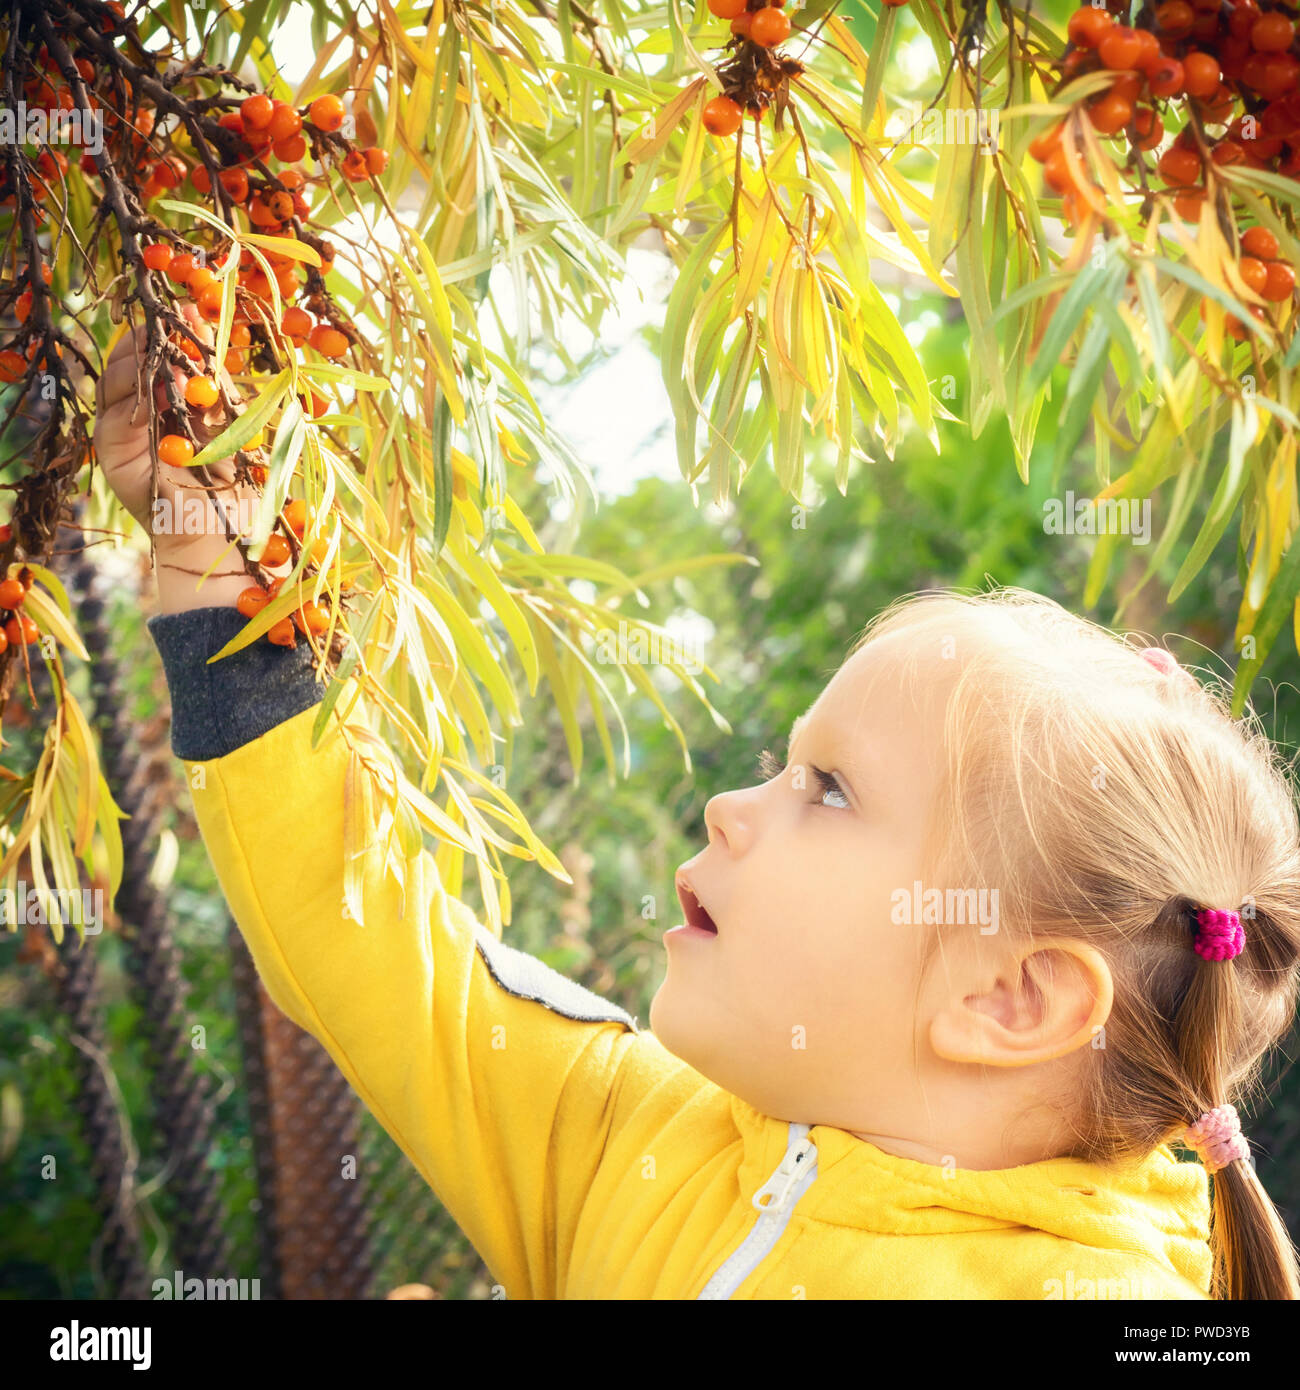 Kleines Mädchen baby im gelben Overall Anzug mit blonden Haaren sammelt und beißt sich frisst saisonale Sanddorn Beeren. Ernte im Herbst Garten Stockfoto